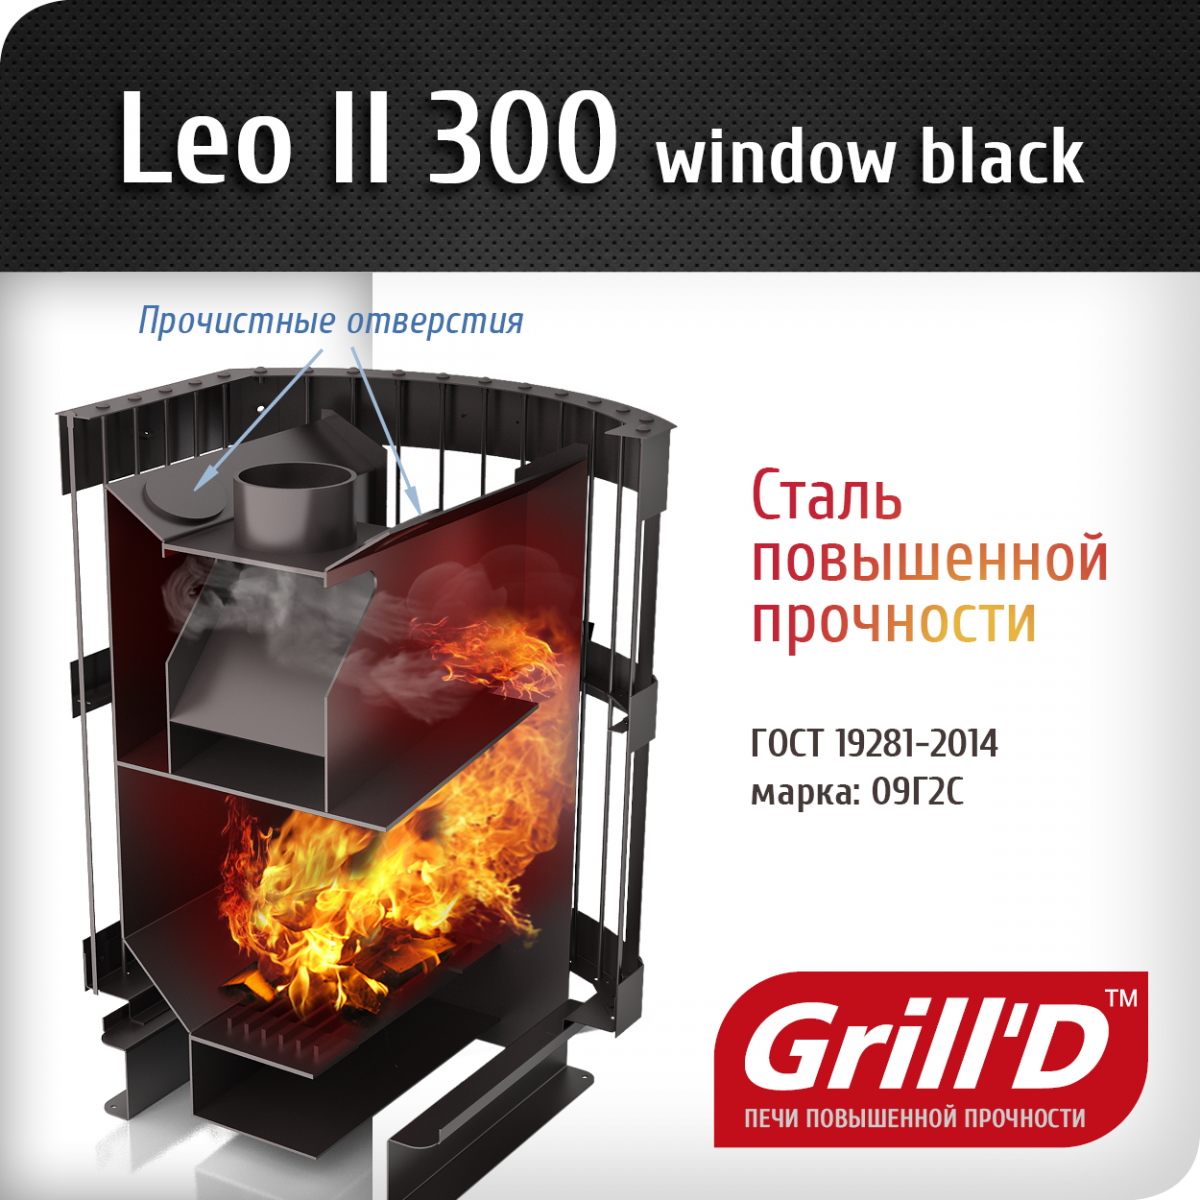 Фото товара Банная печь Grill'D Leo II 300 Window black. Изображение №2